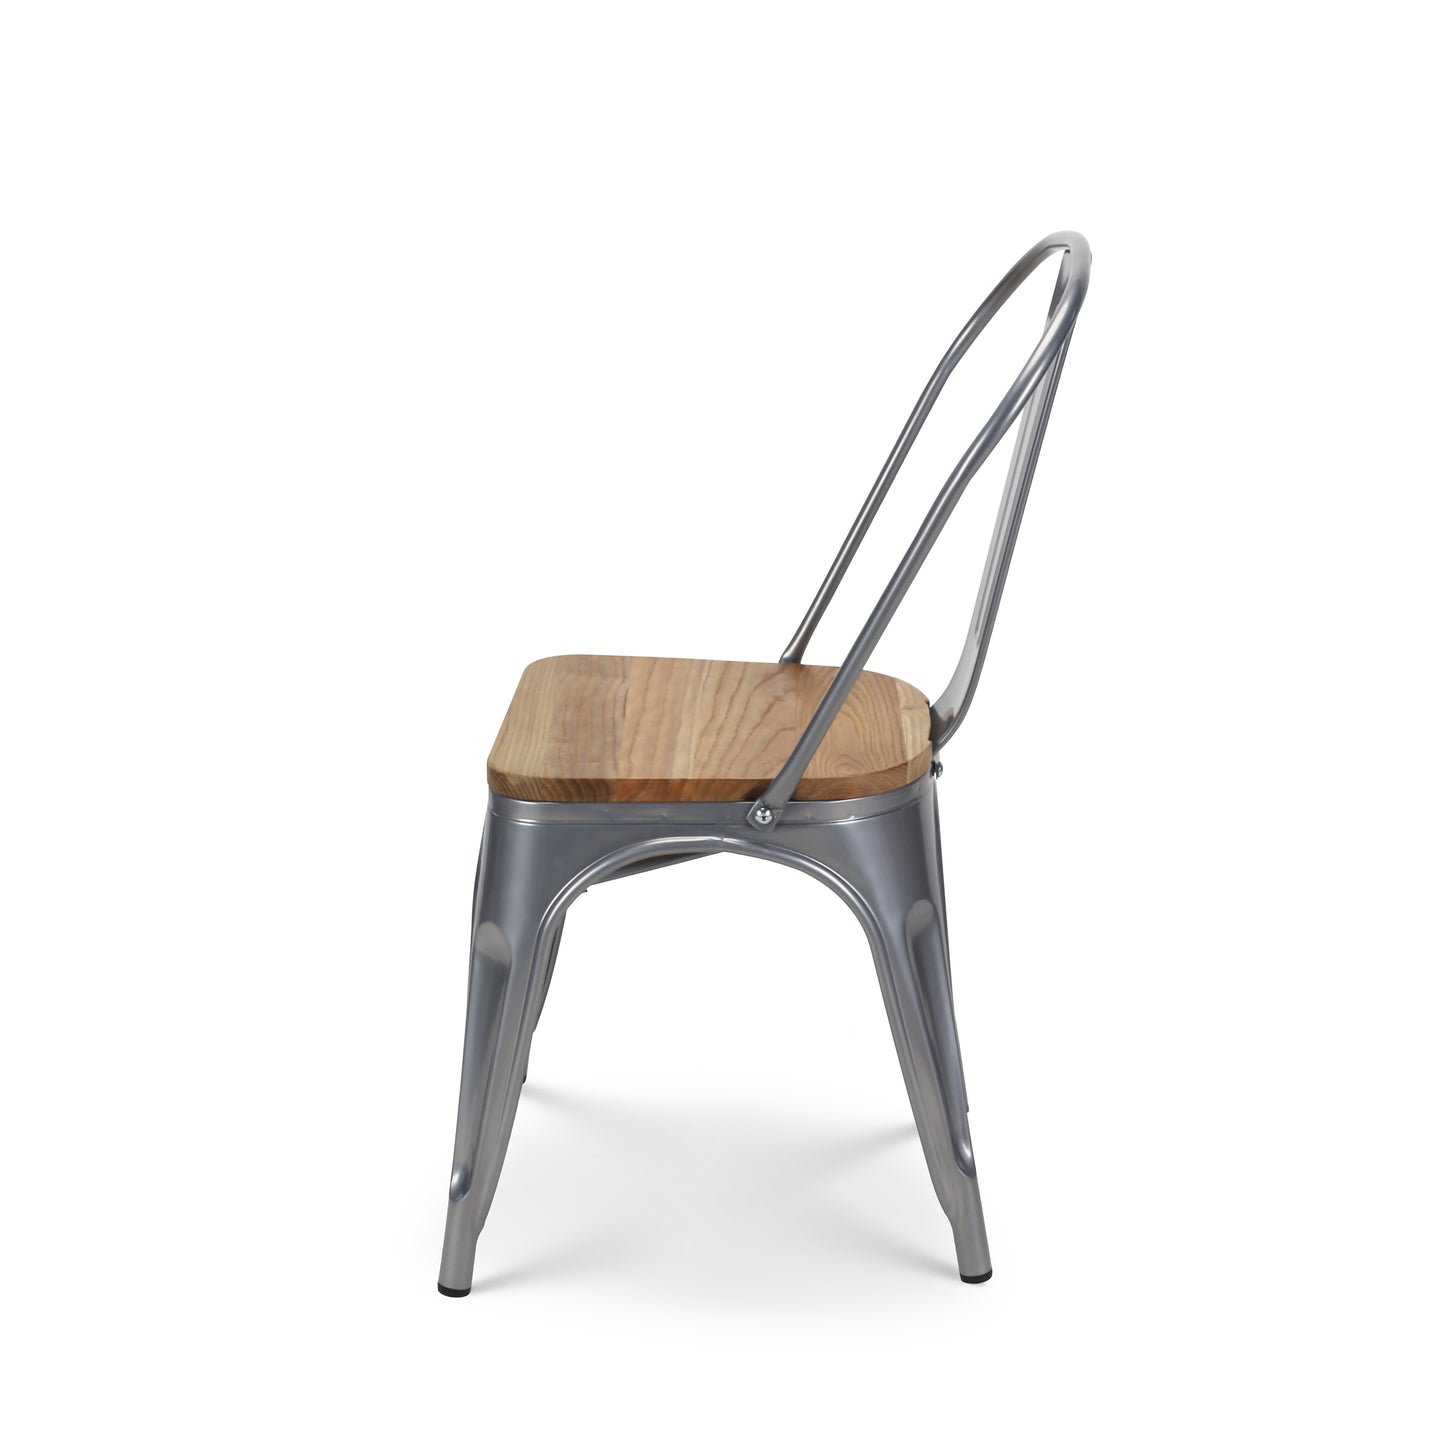 Chaise en métal gris silver avec assise en bois massif clair - Style industriel